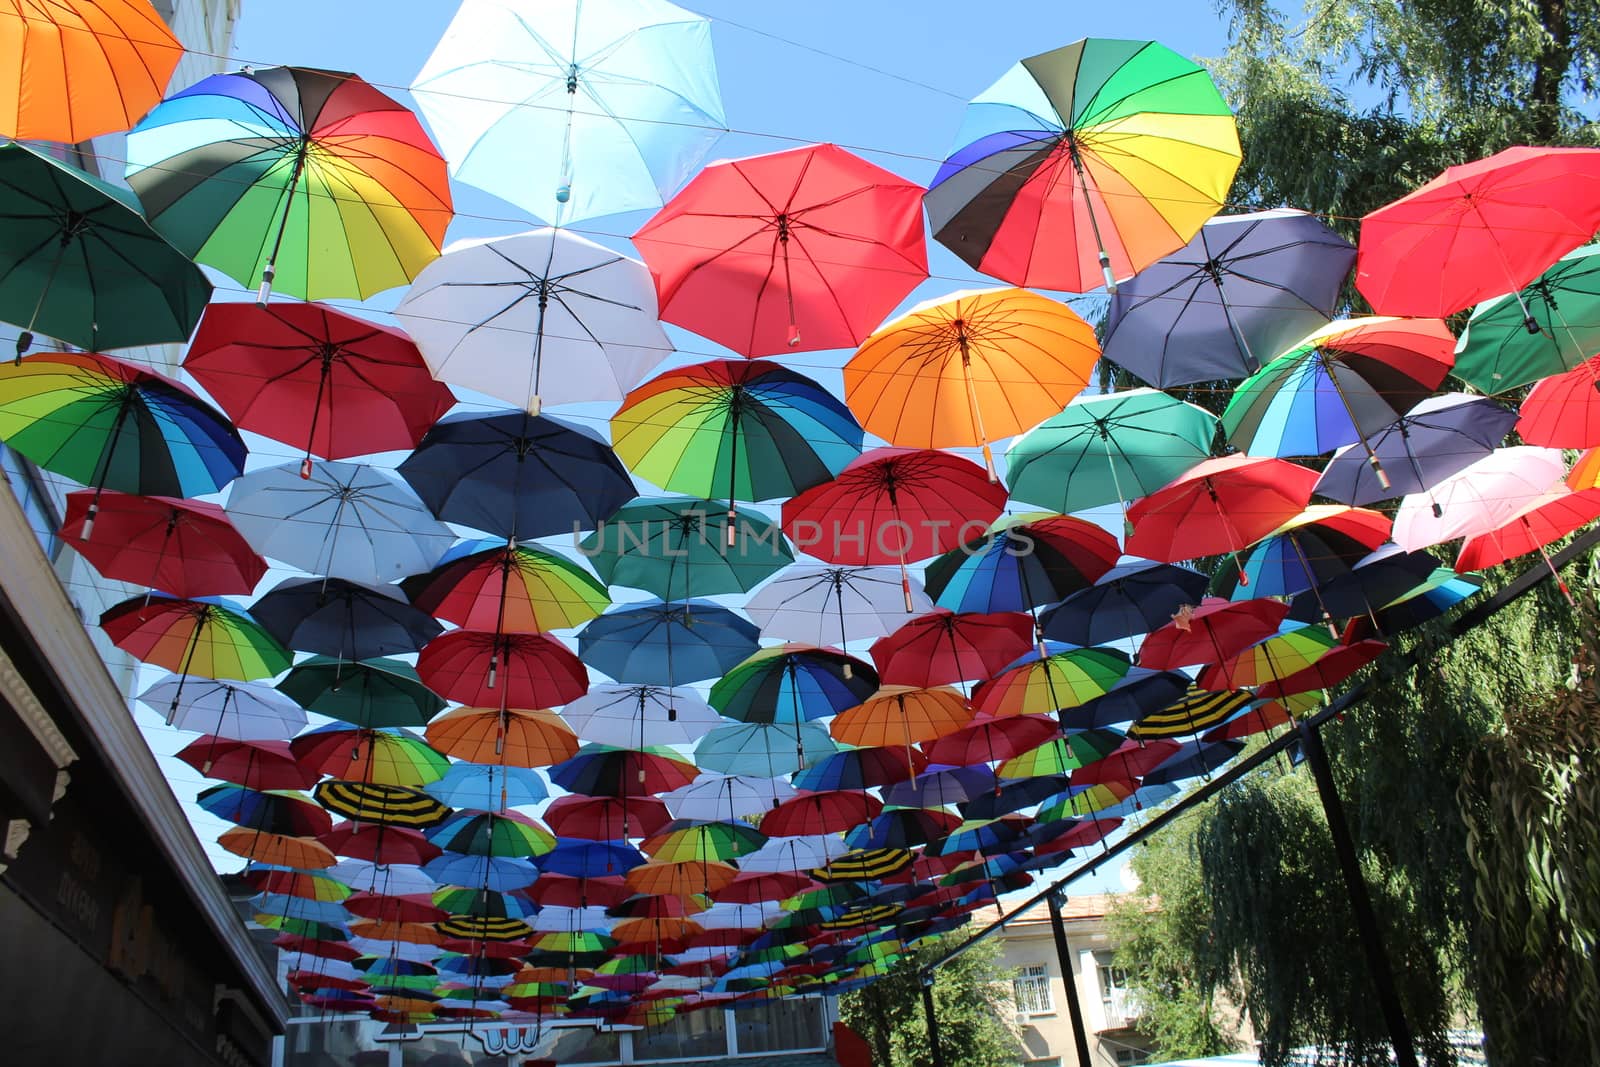 Soaring in the sky multi-colored umbrellas.